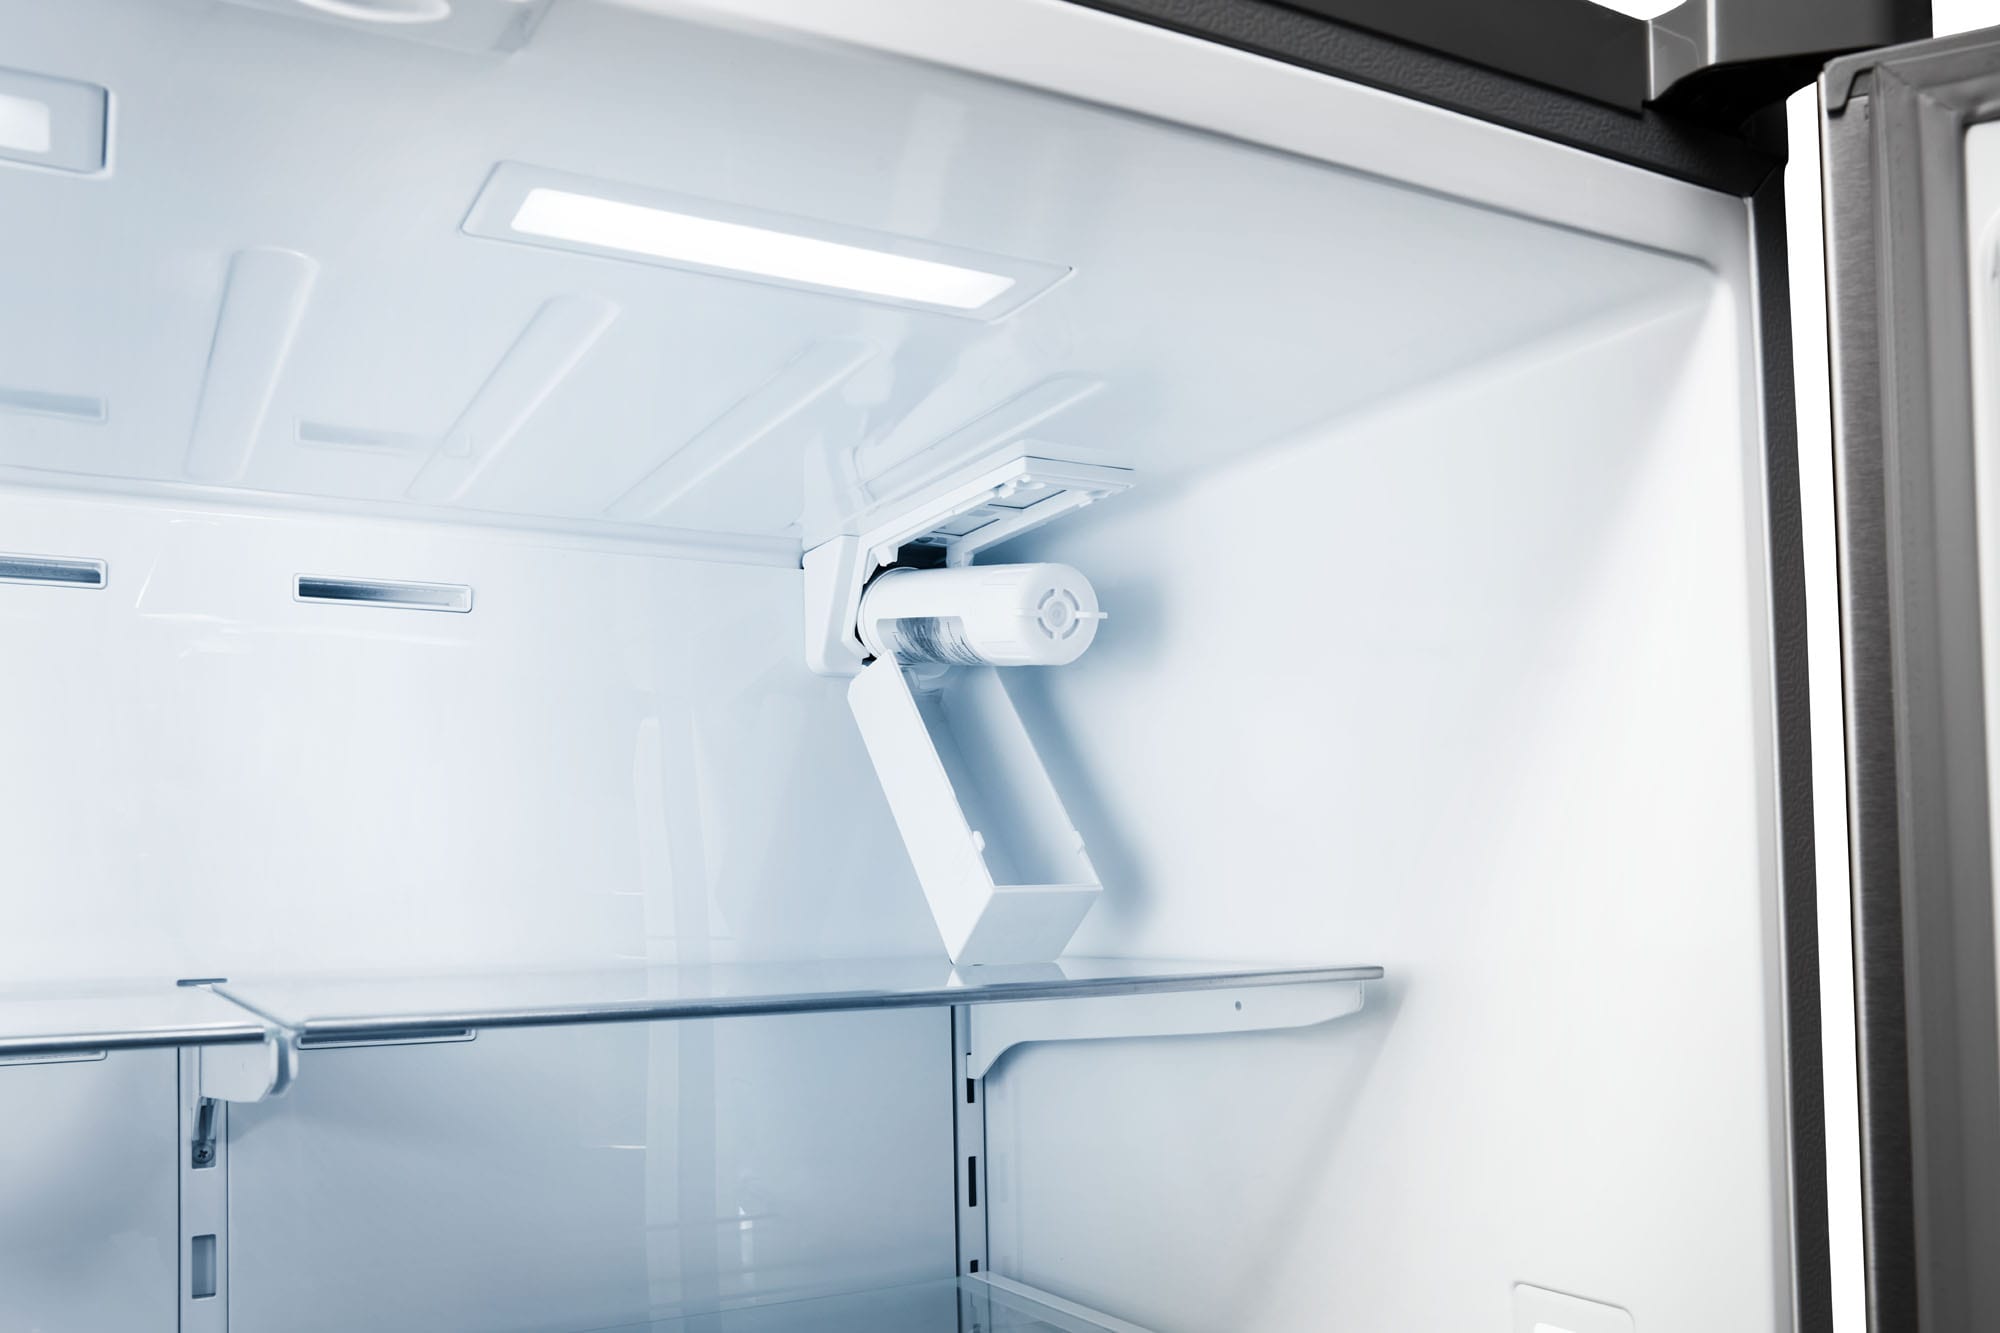 Réfrigérateur Thor Kitchen de 22 pi³ à portes françaises de profond